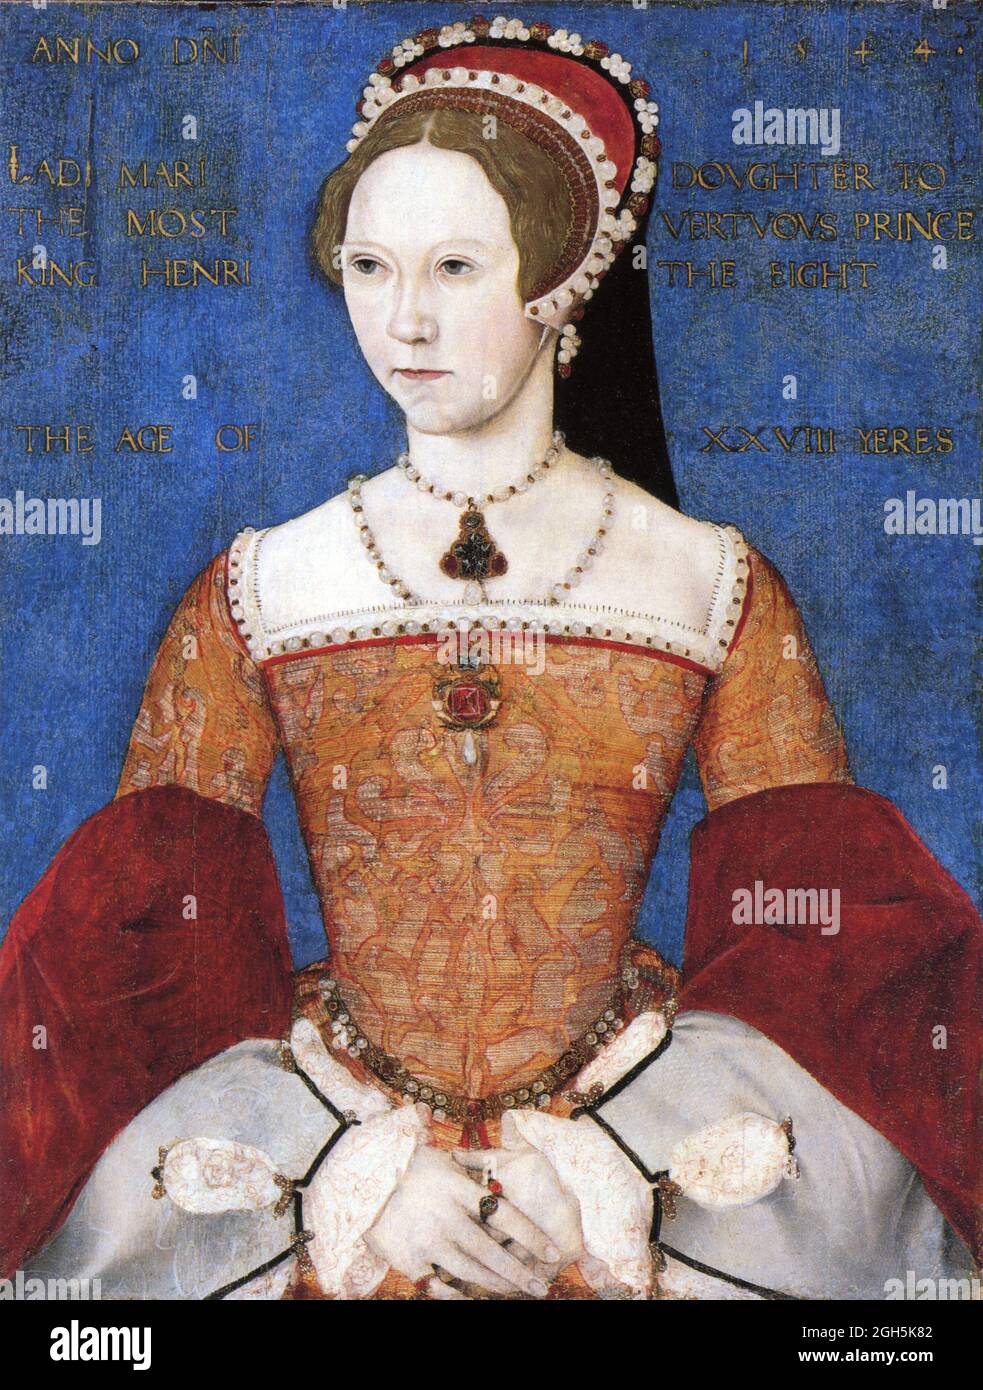 Ritratto della Regina Maria i (Bloody Mary) che fu Regina d'Inghilterra dal 1553 al 1558 Foto Stock